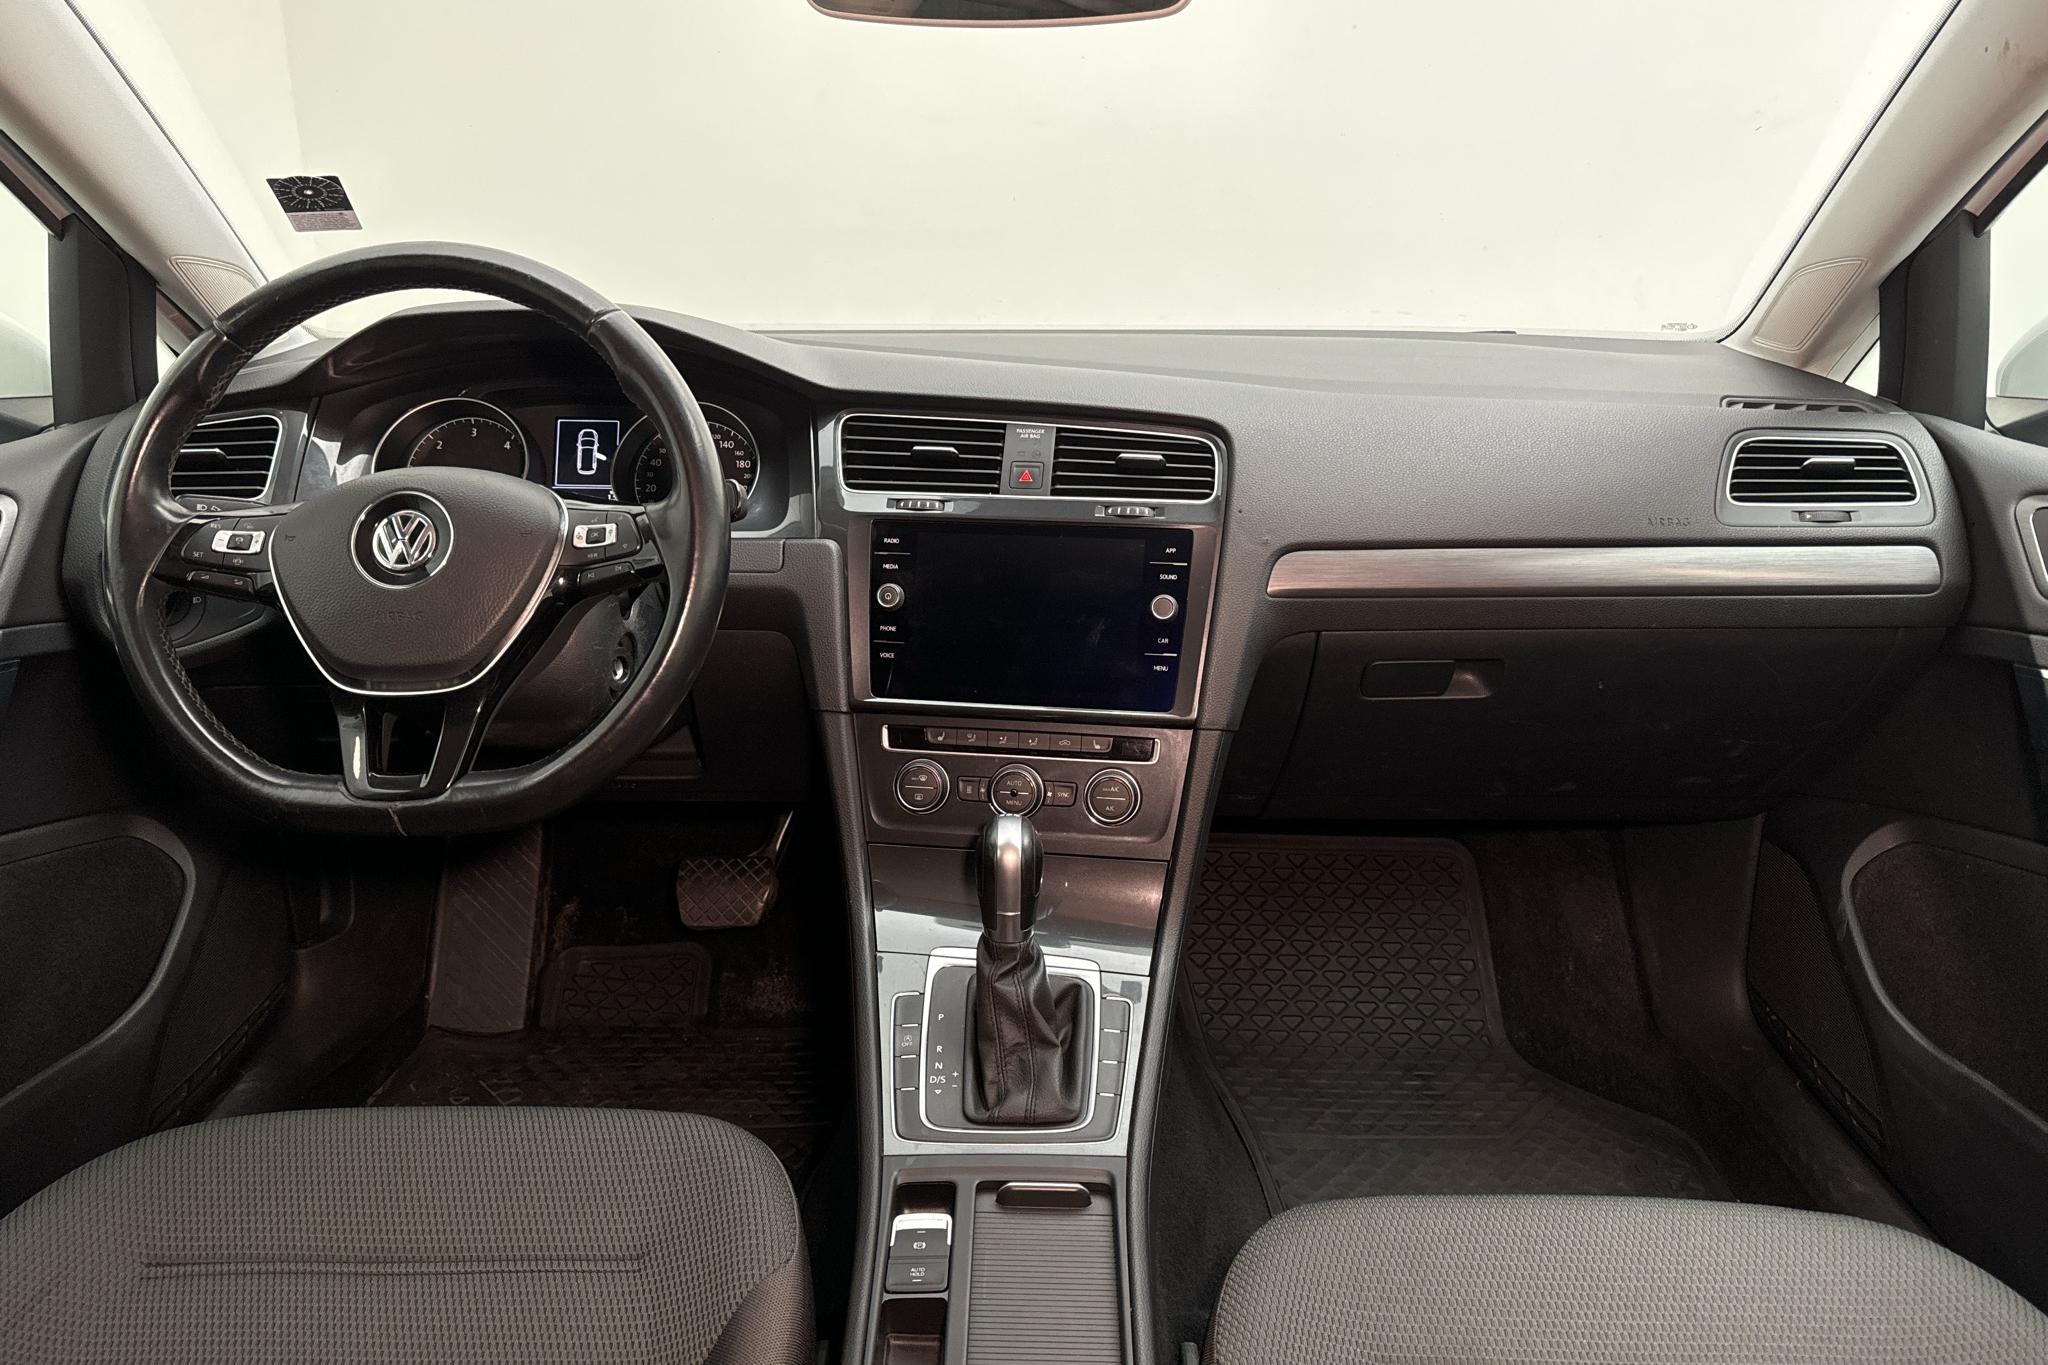 VW Golf VII 1.6 TDI Sportscombi (115hk) - 137 930 km - Automaattinen - valkoinen - 2019